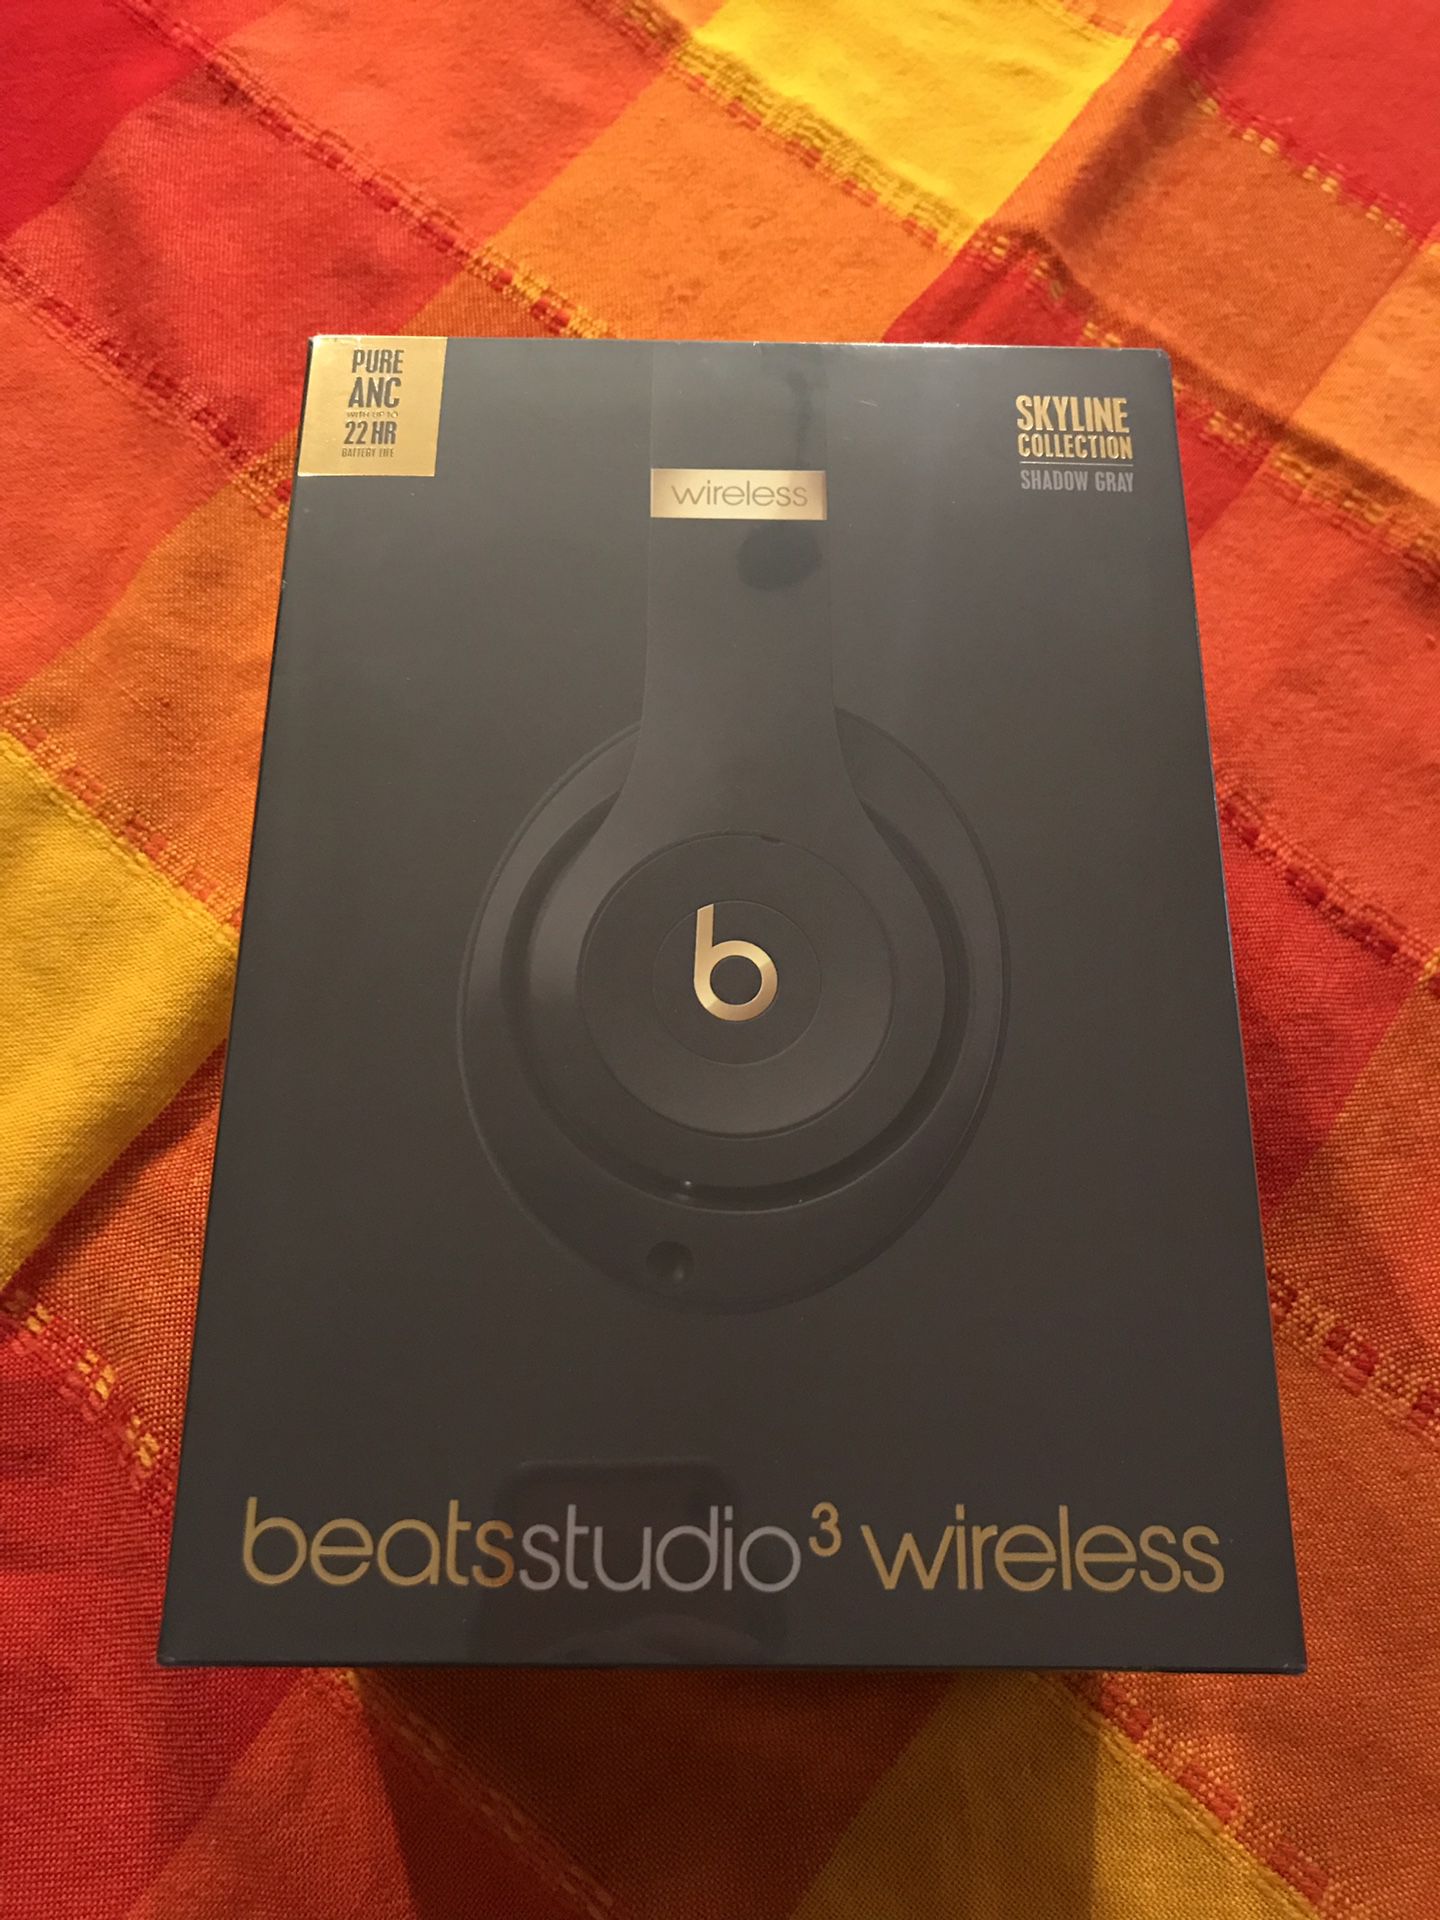 Beats Studio3 Wireless Headphones